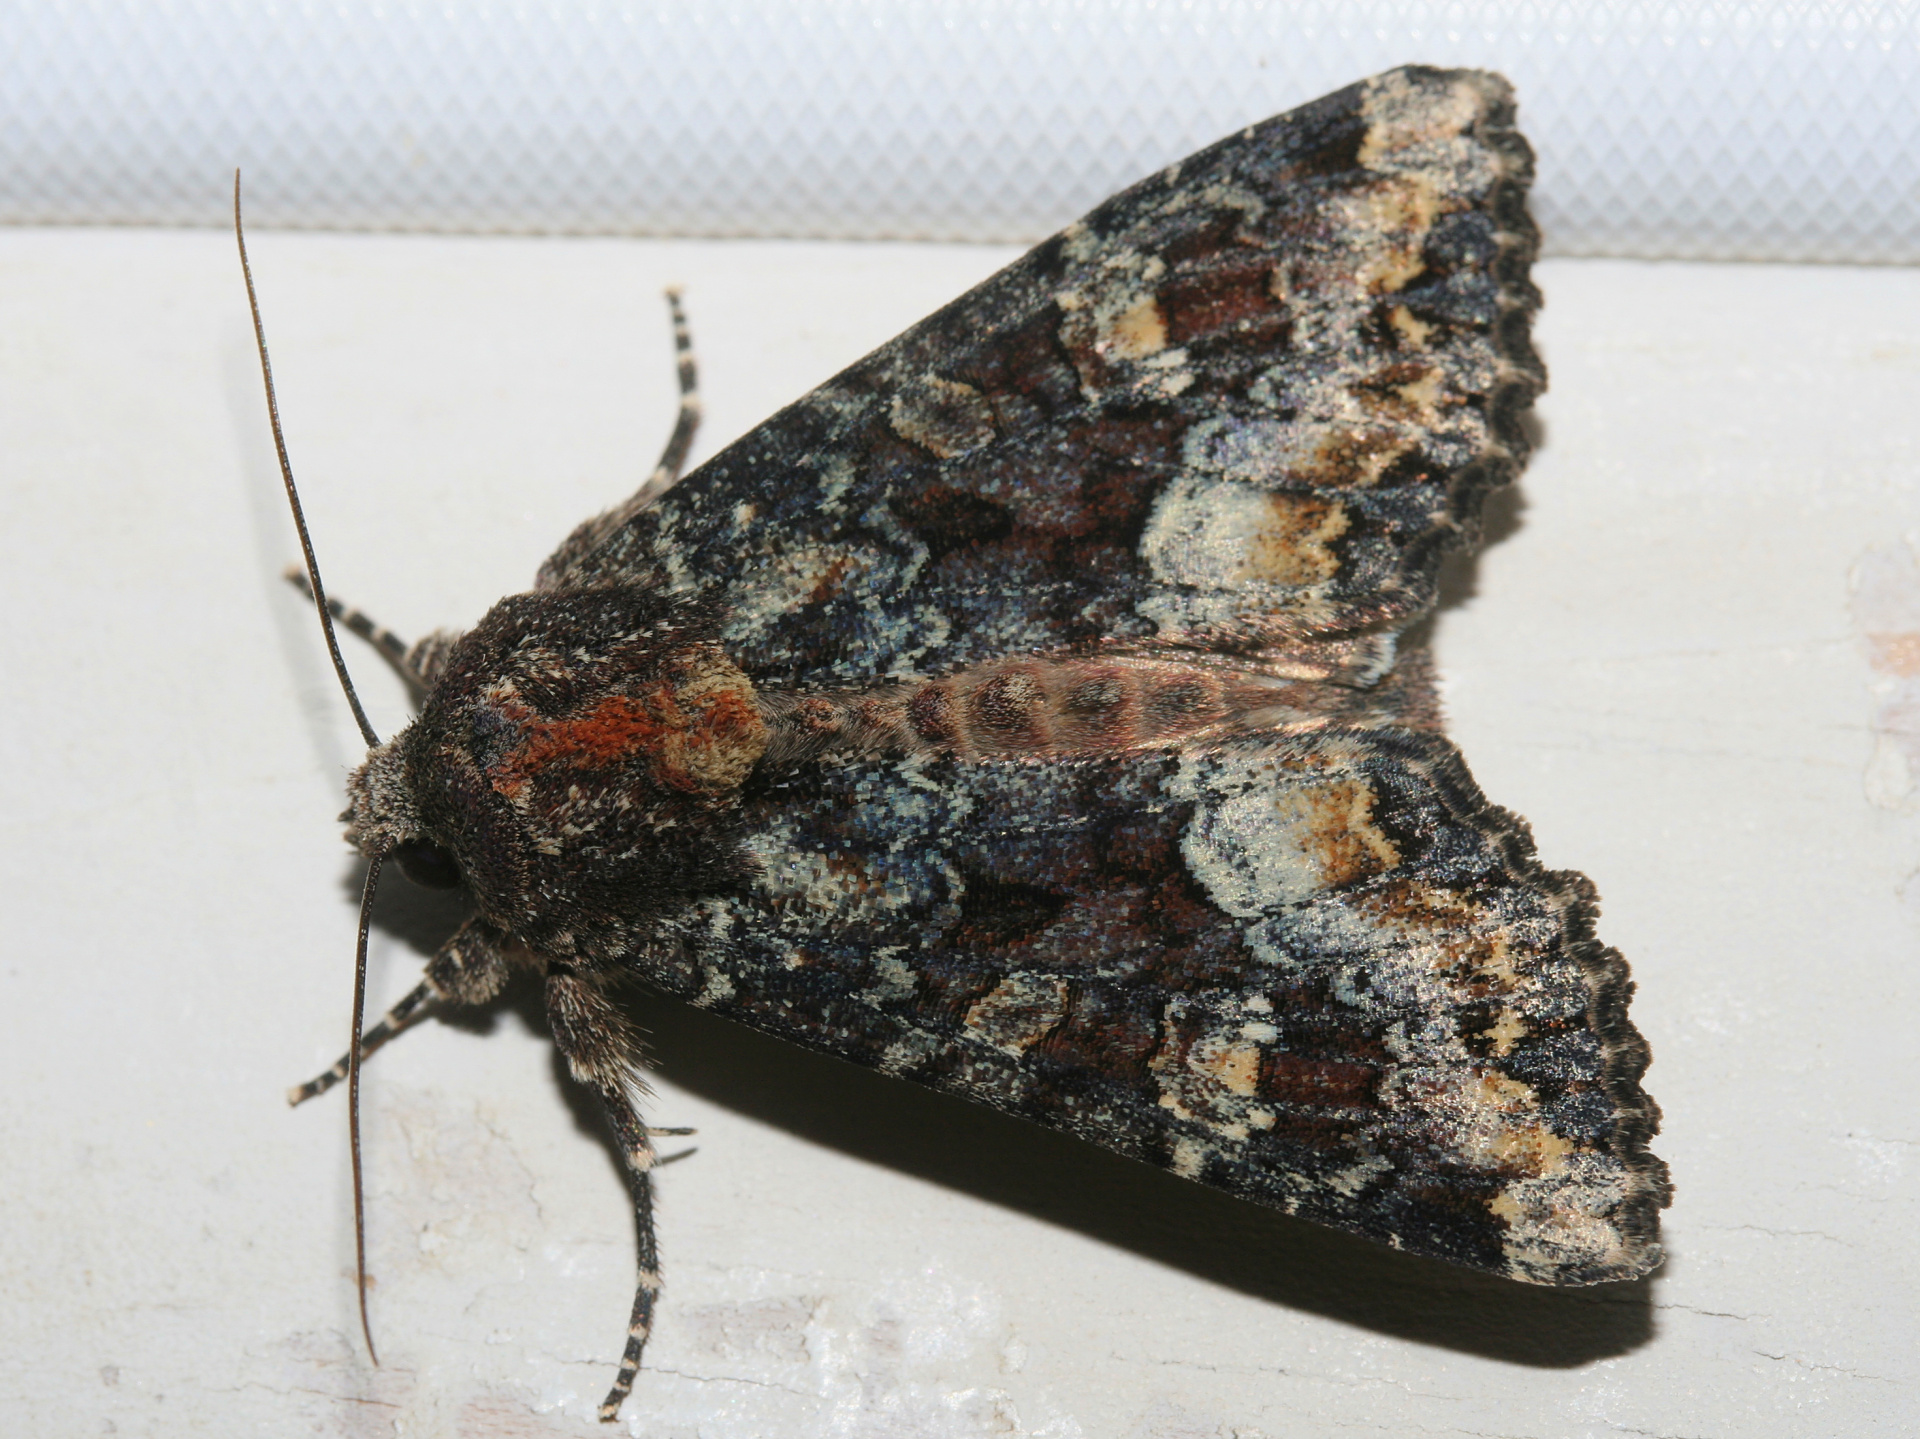 Apamea amputatrix (Podróże » USA: Epopeja Czejeńska » Zwierzęta » Owady » Motyle i ćmy » Noctuidae)